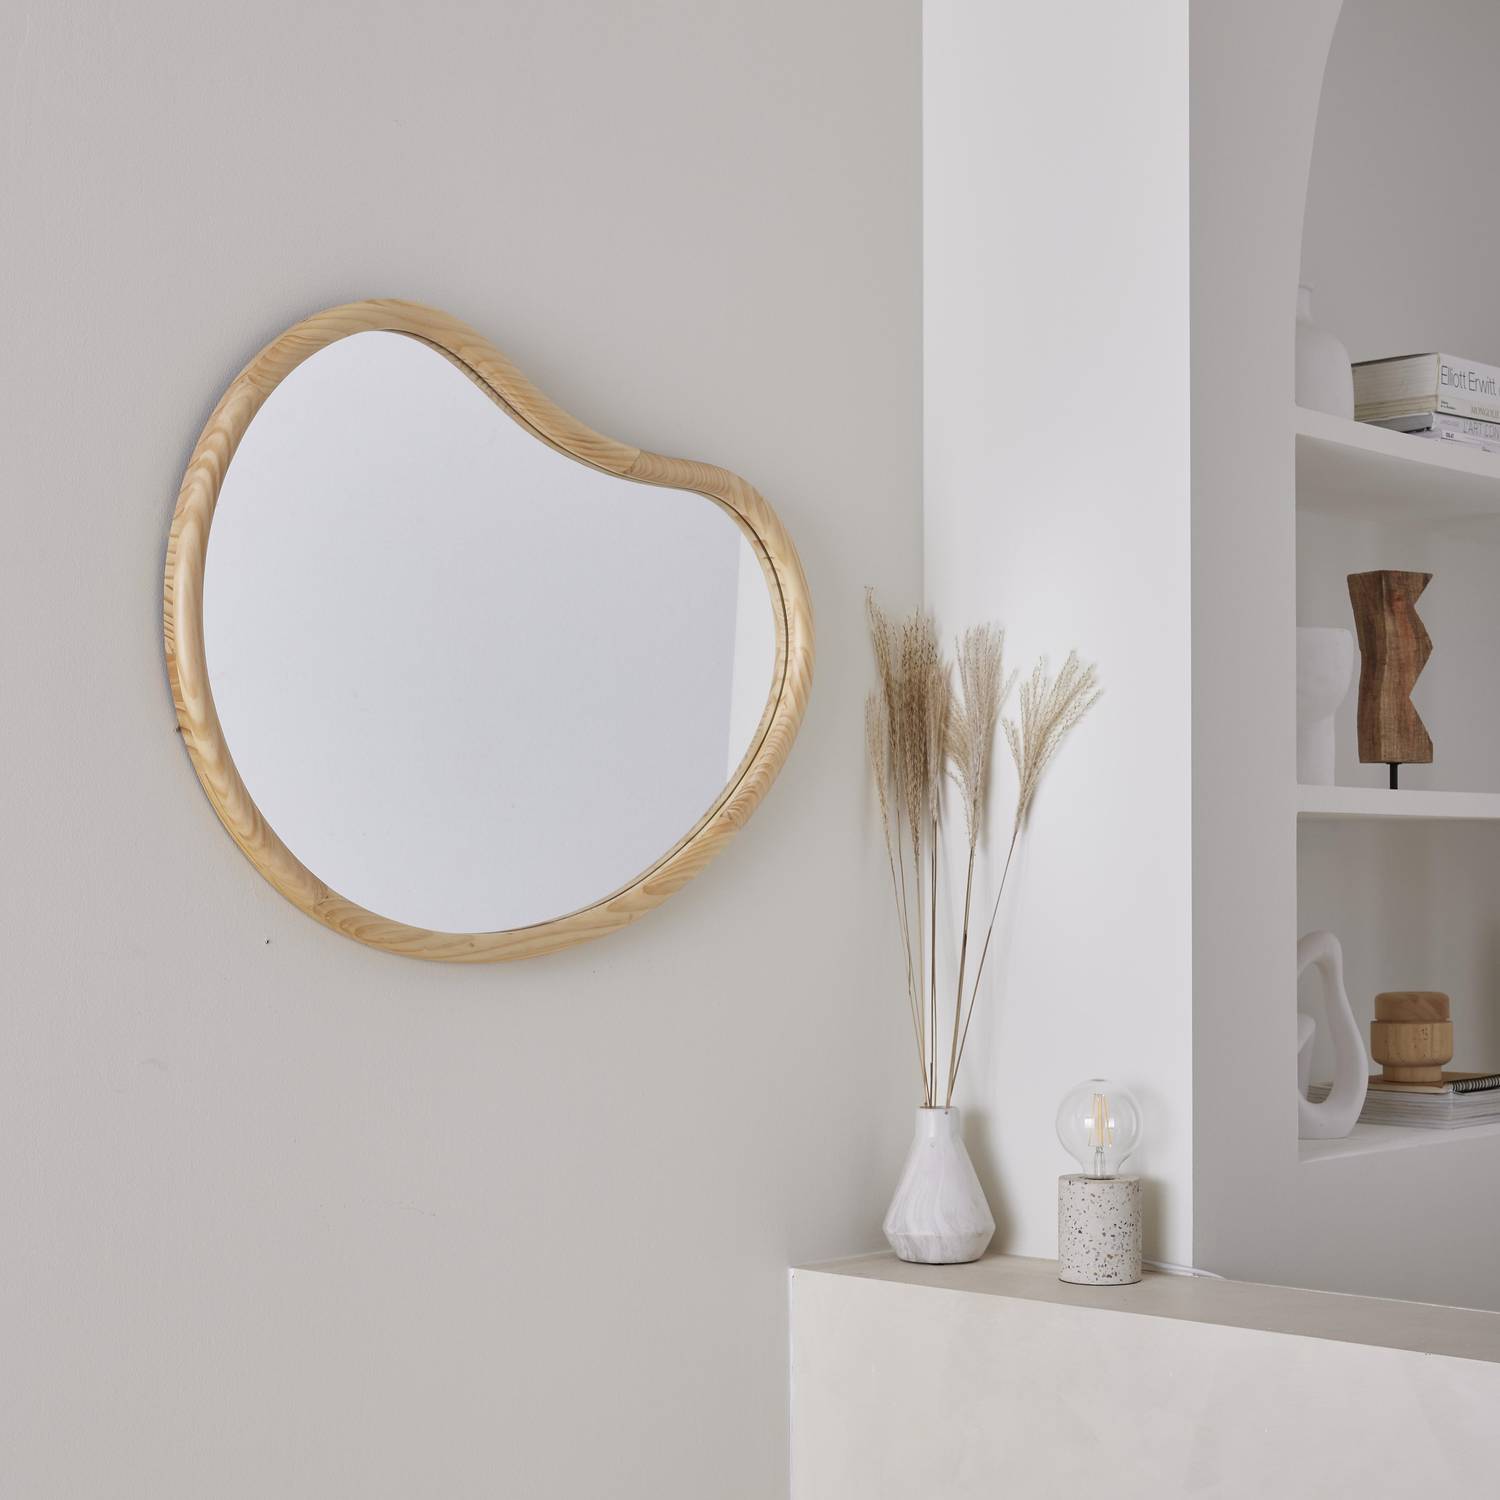 Organischer Spiegel aus Tannenholz 85cm 3cm dick naturfarben ideal für Eingang, Schlafzimmer oder Bad - Jacob Photo2